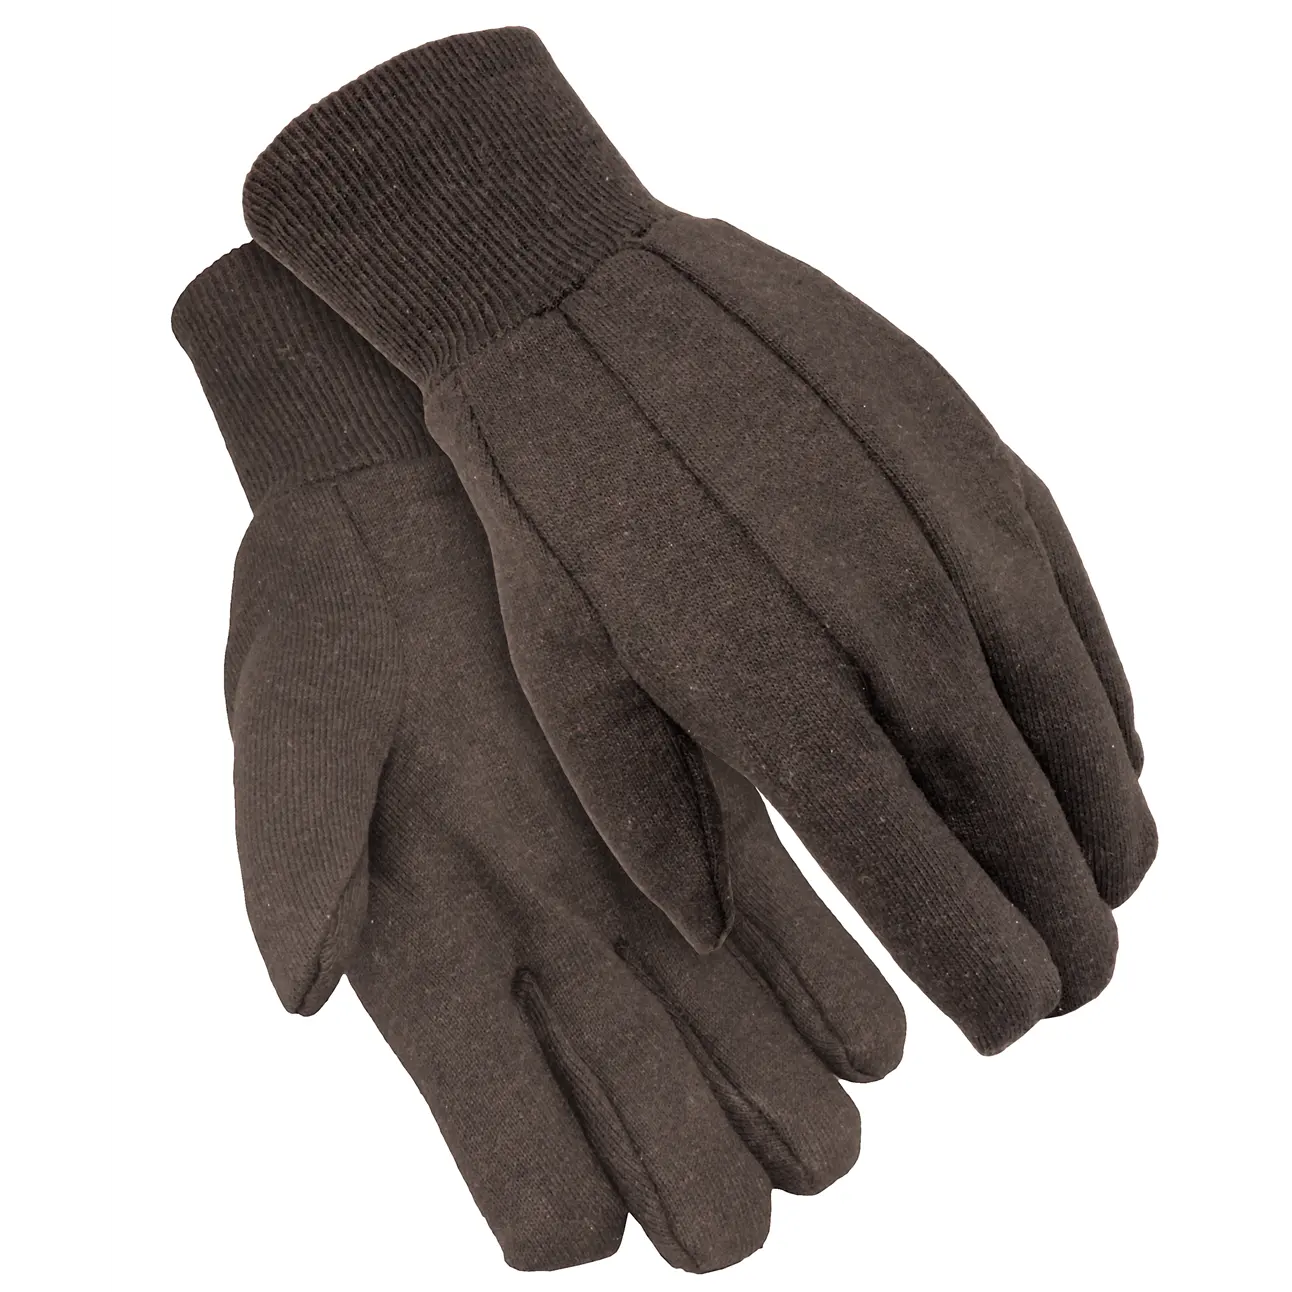 Sıcak satış kullanımlık genel amaçlı endüstriyel bahçe güvenlik ucuz kahverengi pamuklu jarse eldiven Jersey çalışma eldiven